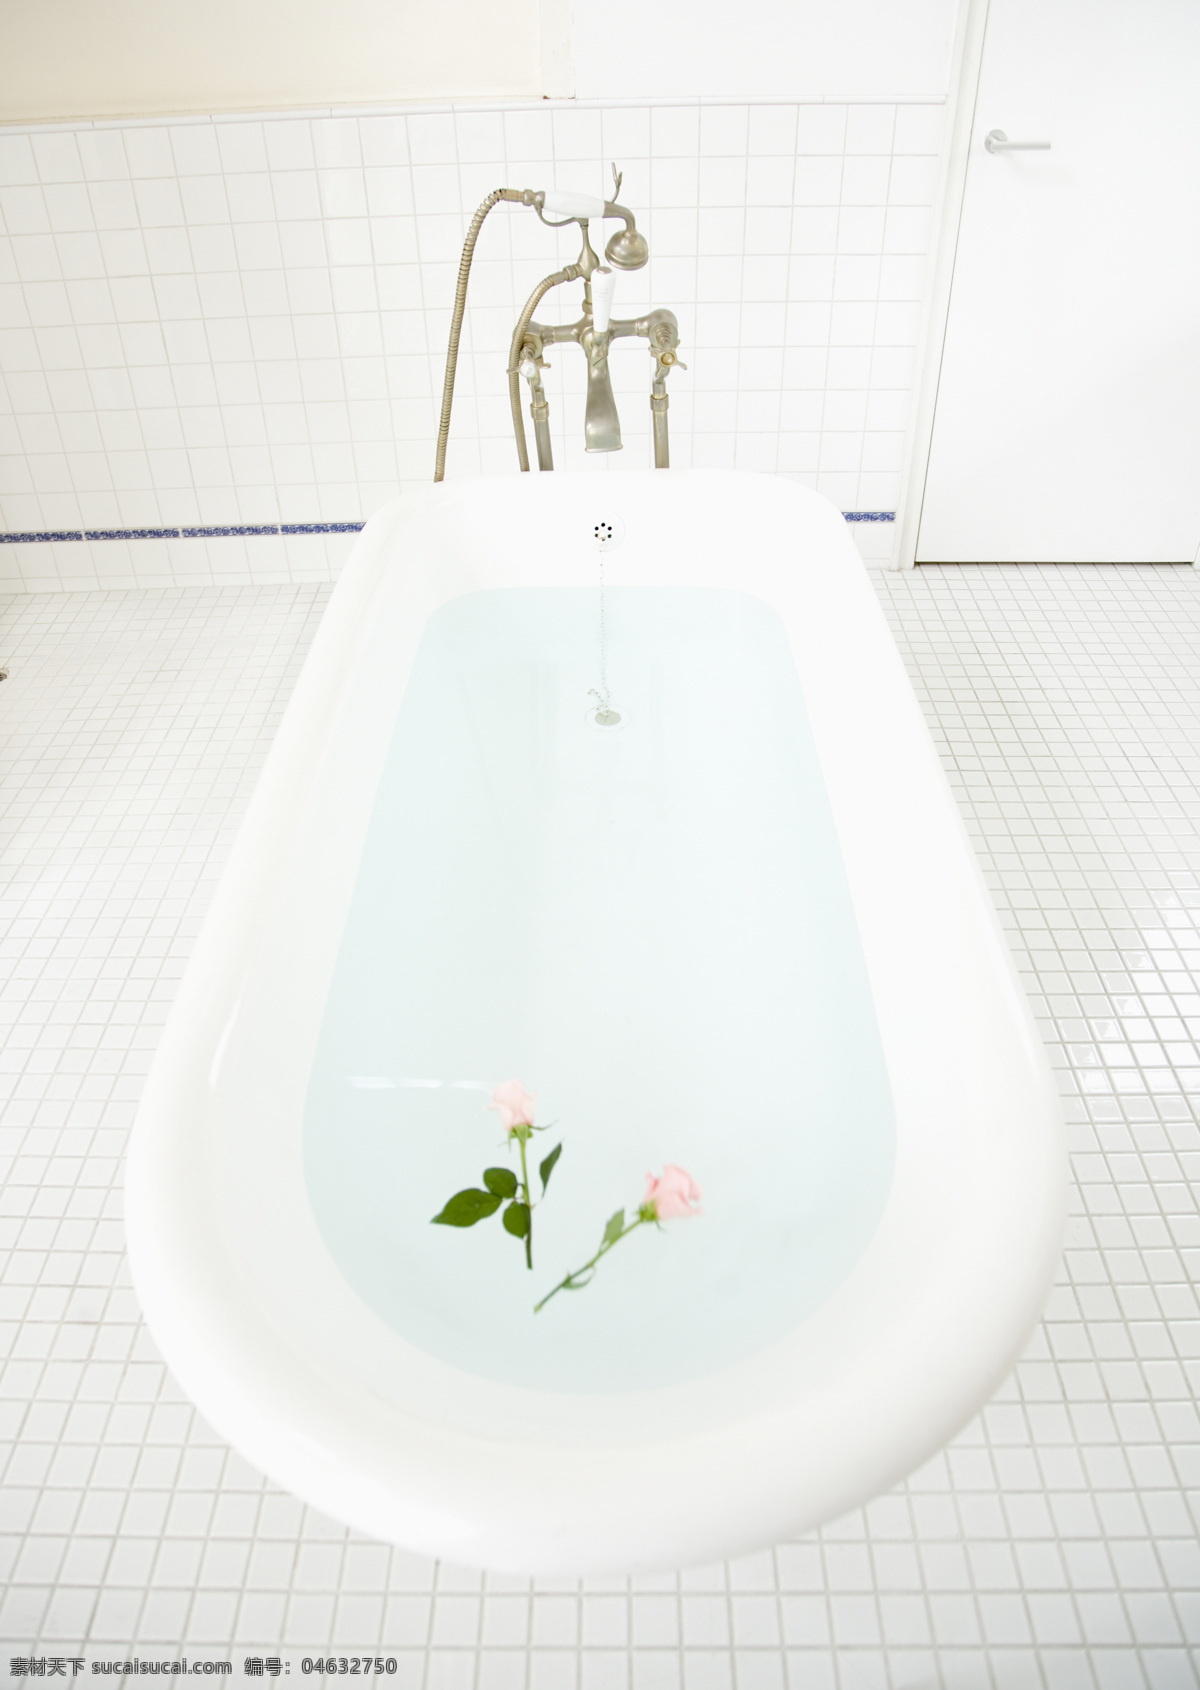 浴缸 盛水的浴缸 沐浴室 厕所 居家生活 生活素材 生活百科